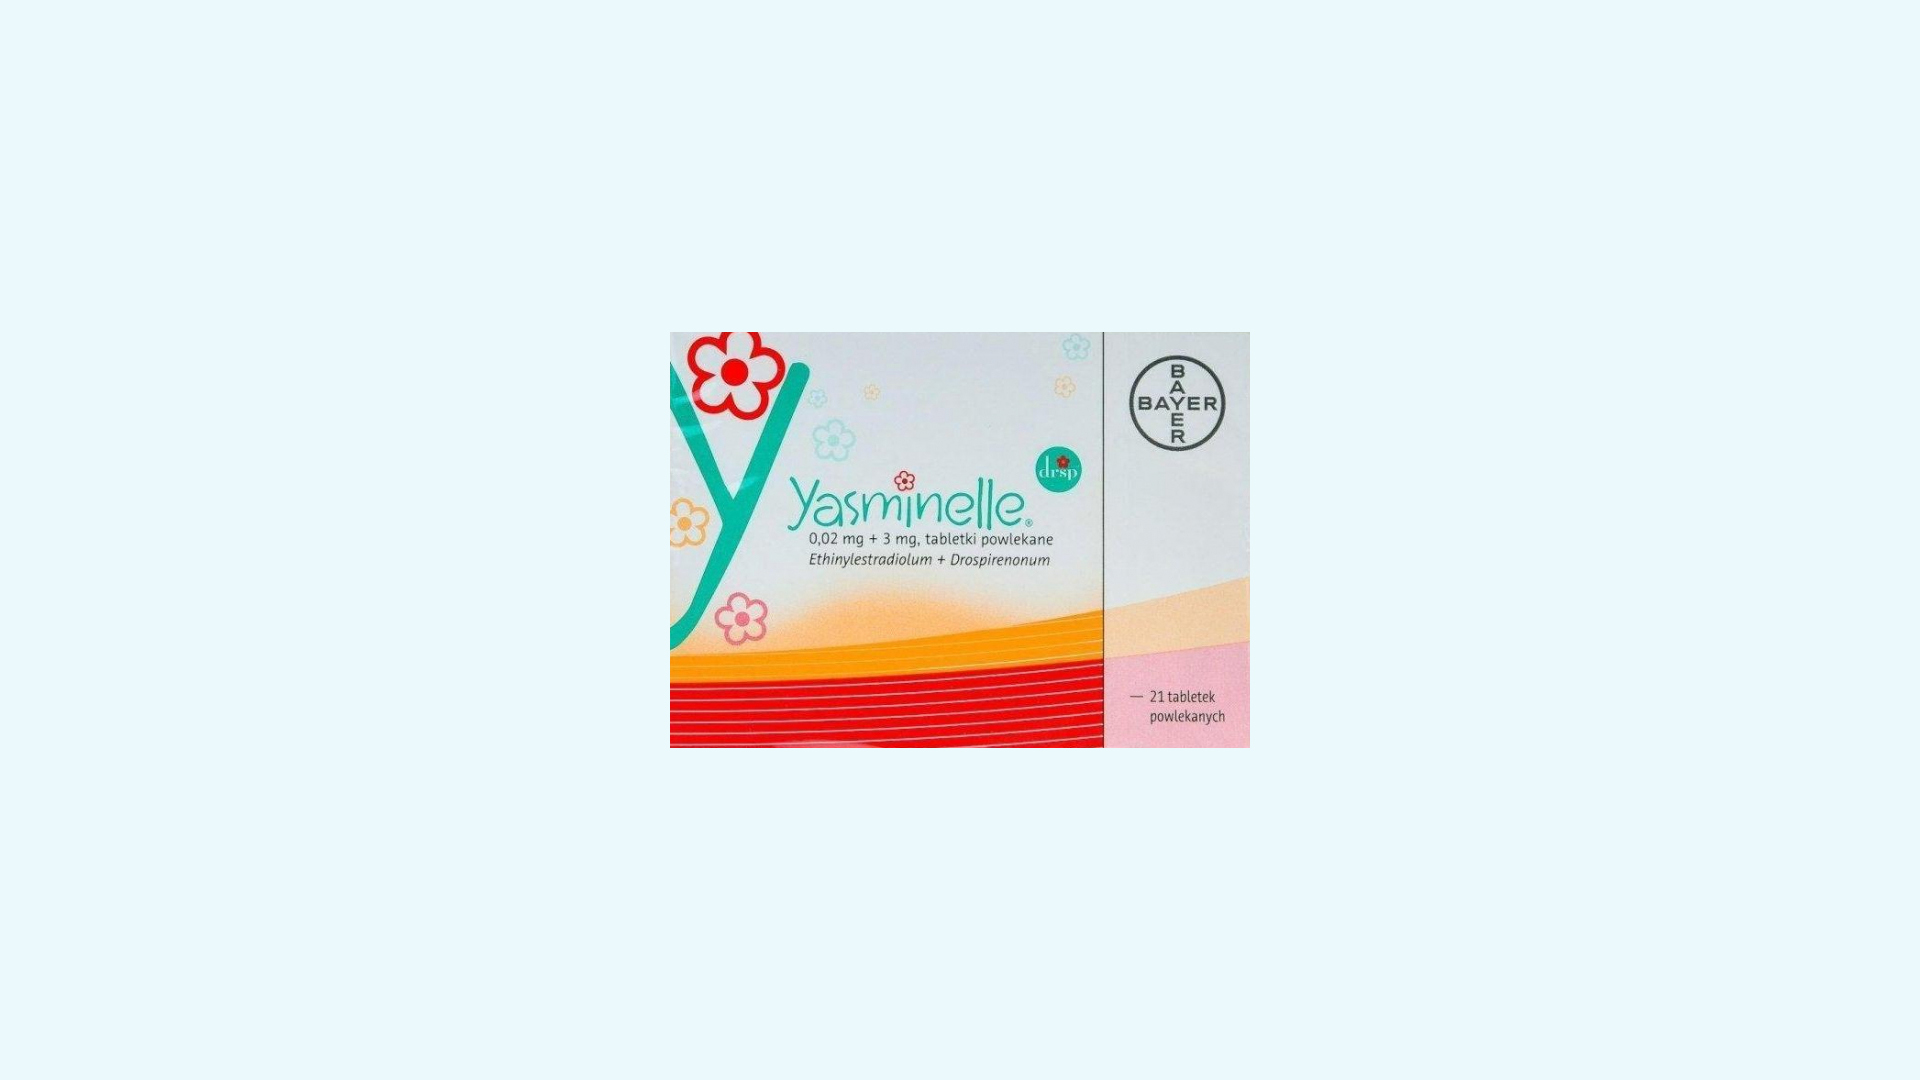 Yasminelle – informacje o leku, dawkowanie oraz przeciwwskazania